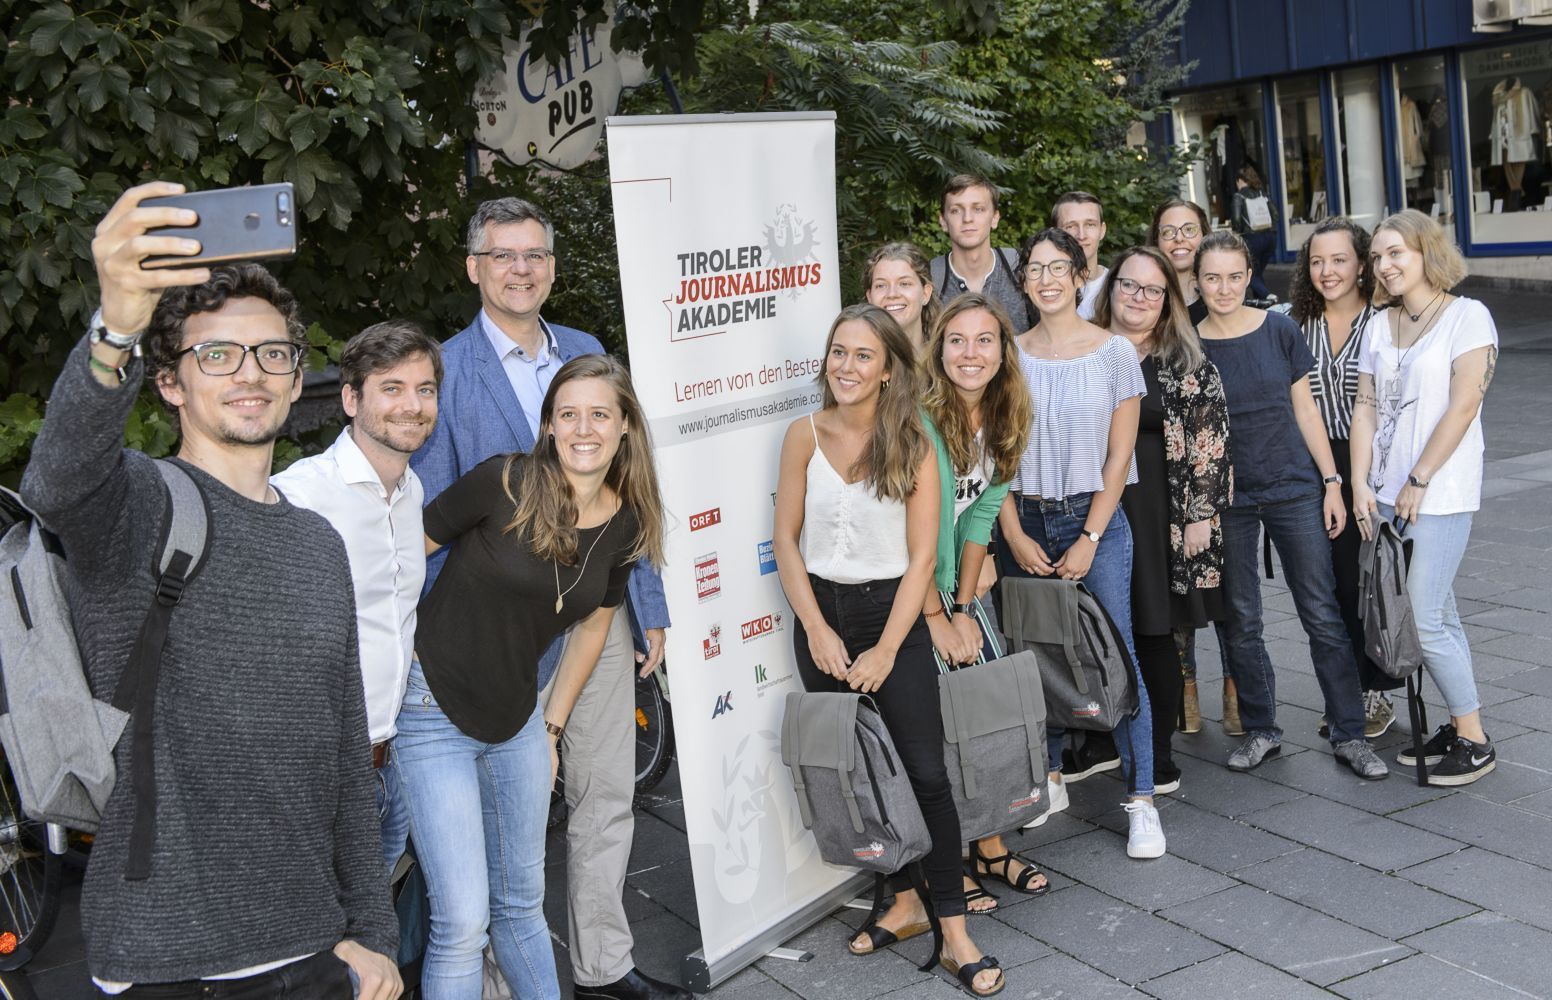 Die Tiroler Journalismusakademie startete mit dem siebten Lehrgang